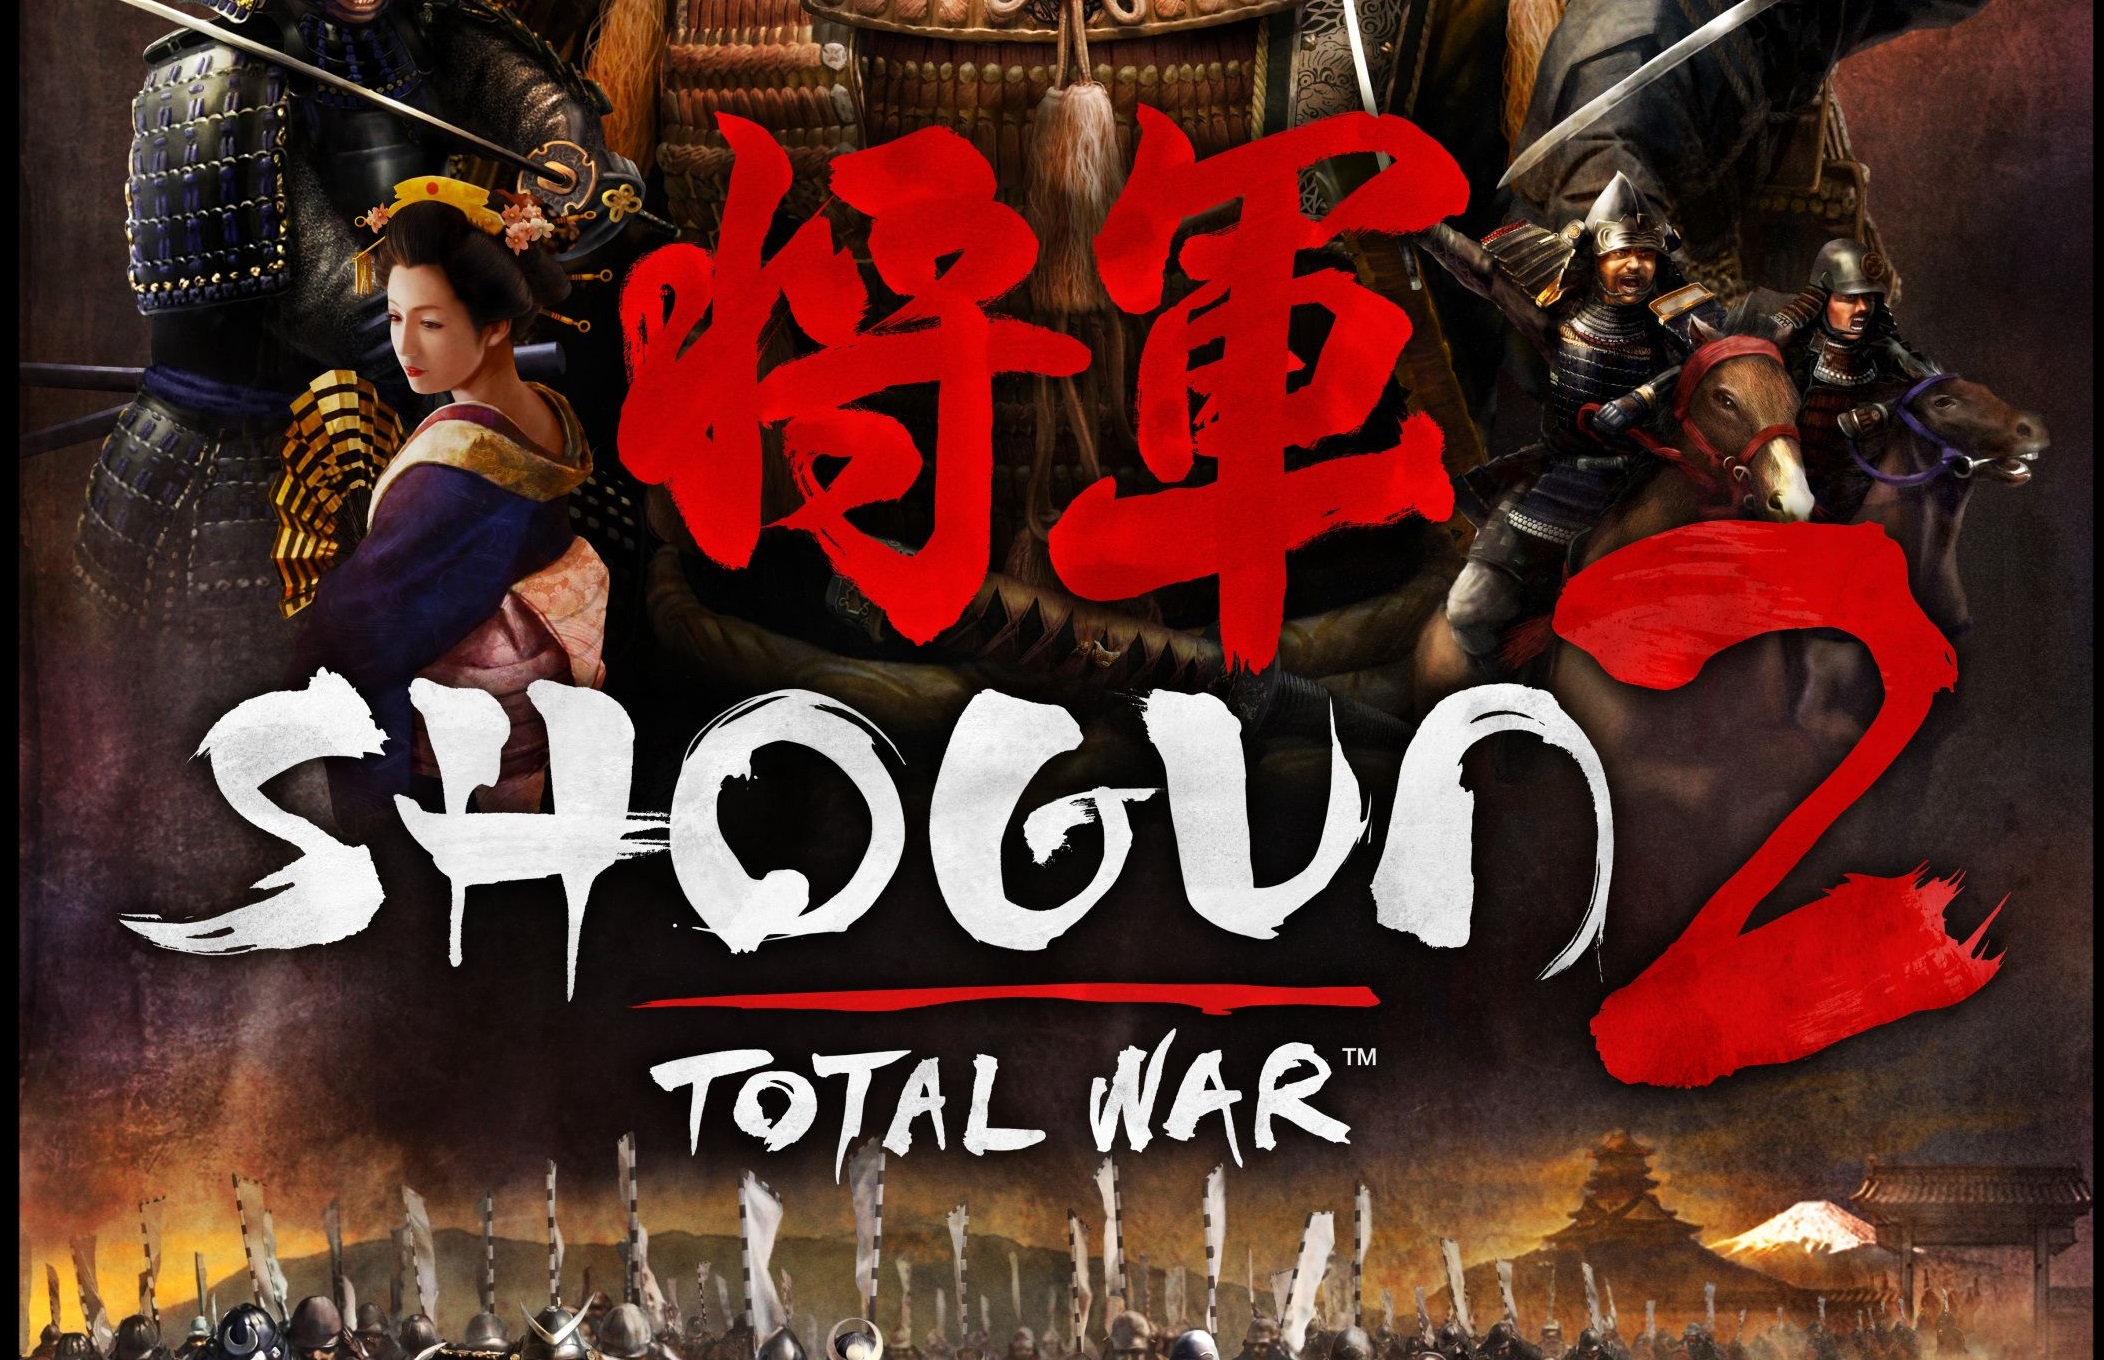 download total war shogun 2 battle